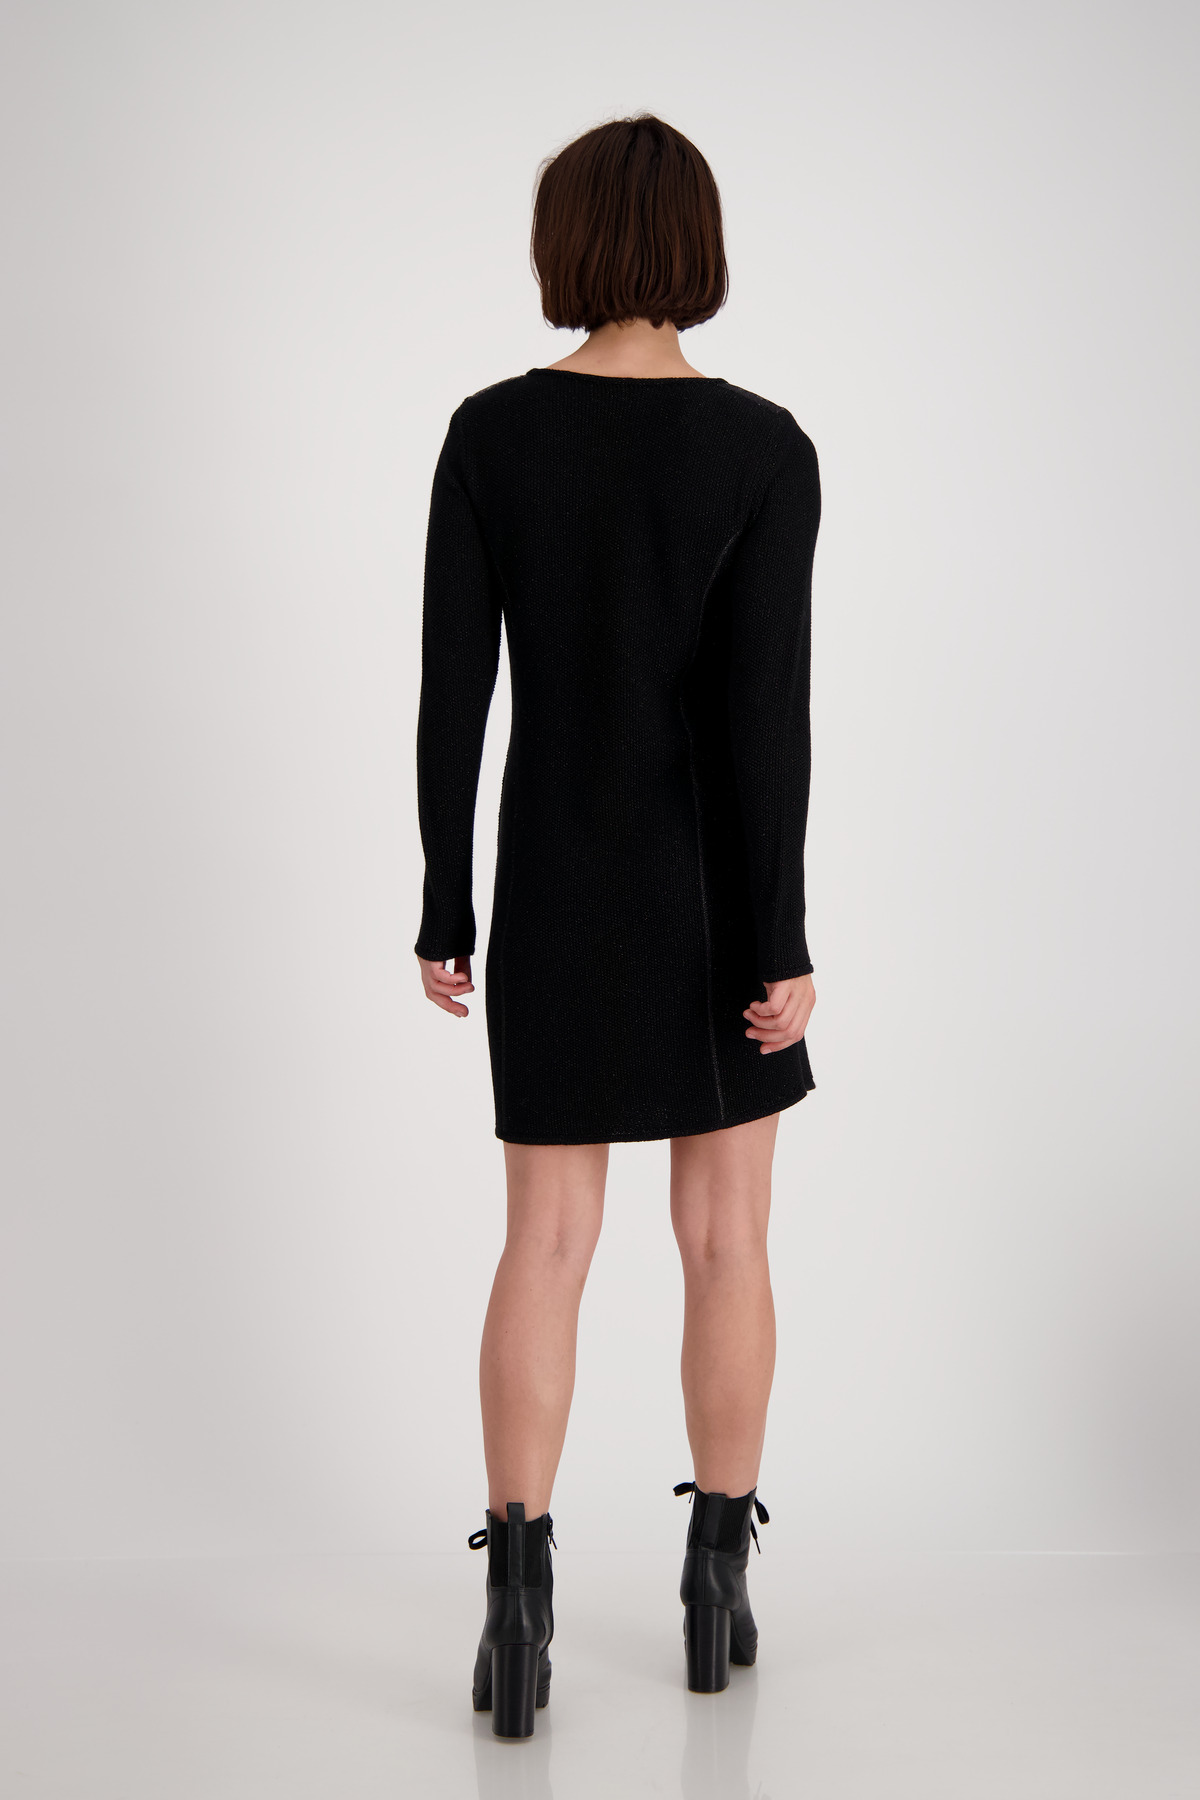 Monari Strick Kleid mit Rundhals und Lurex Details | mode weber